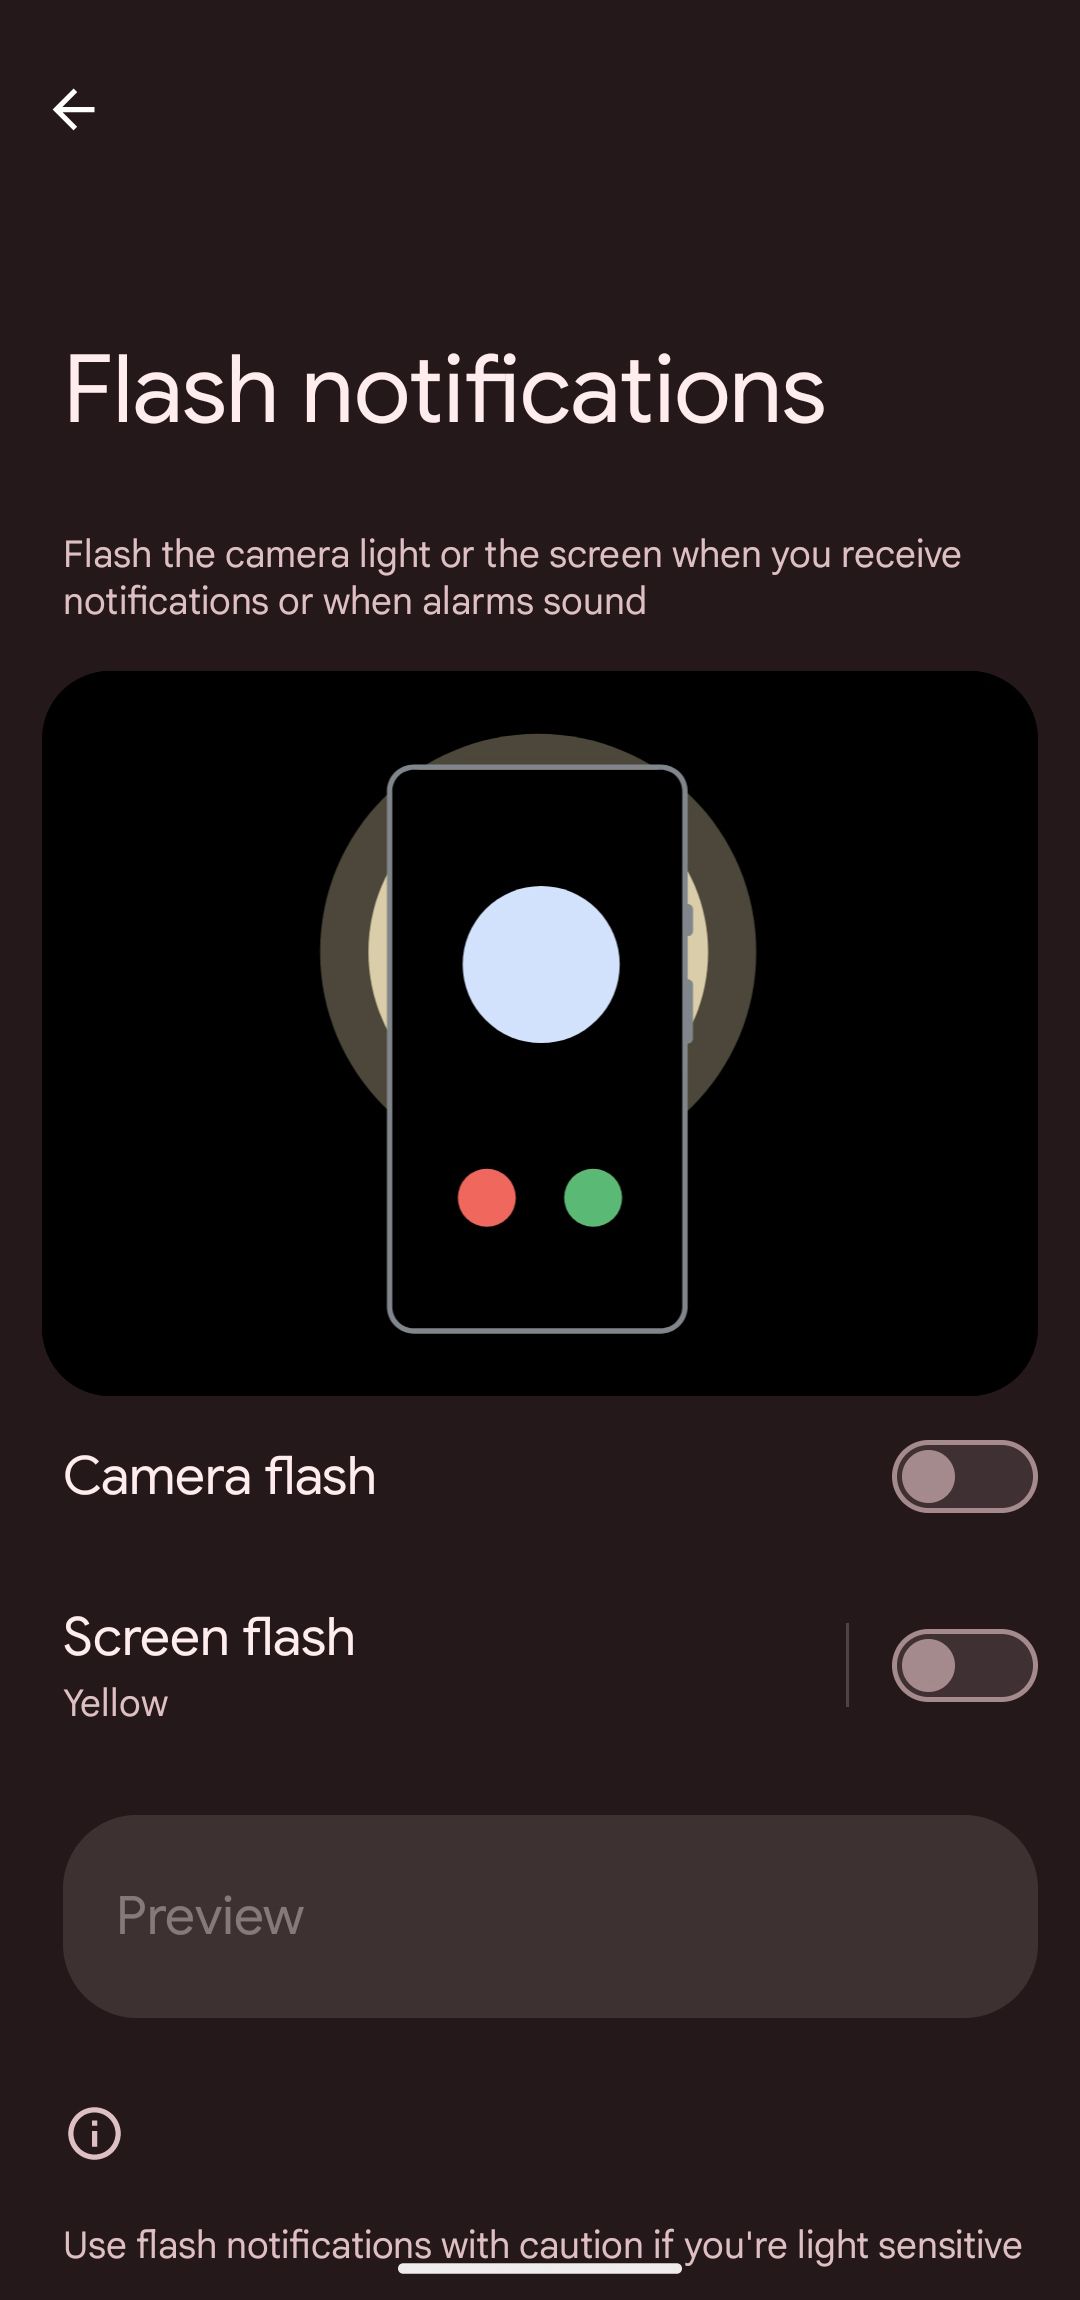 notificações de flash com flash da câmera e alternância de flash da tela